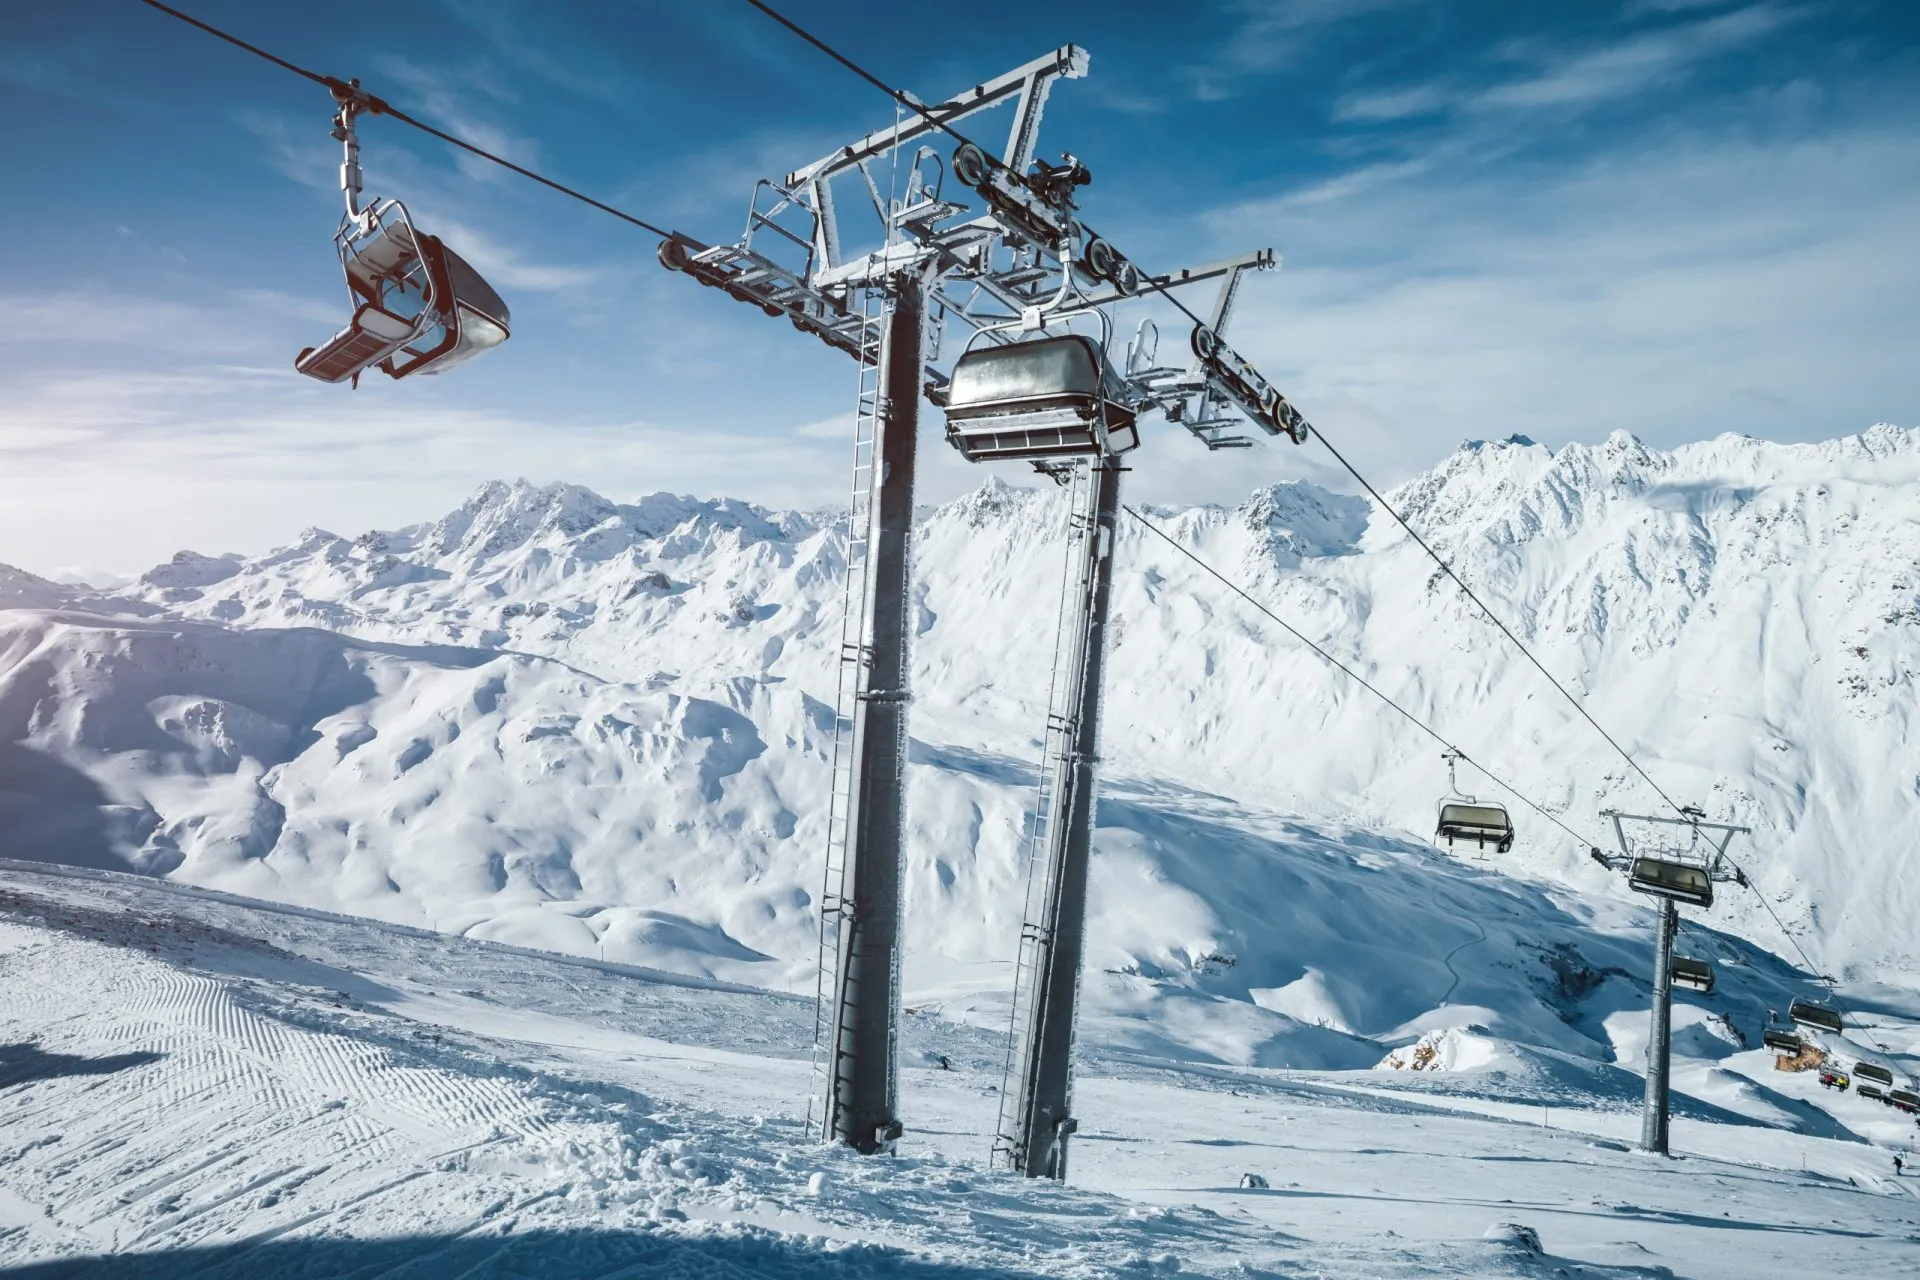 Journée d'hiver ensoleillée dans un domaine skiable. Lieu d'implantation de la célèbre station de ski Ischgl/Samnaun.